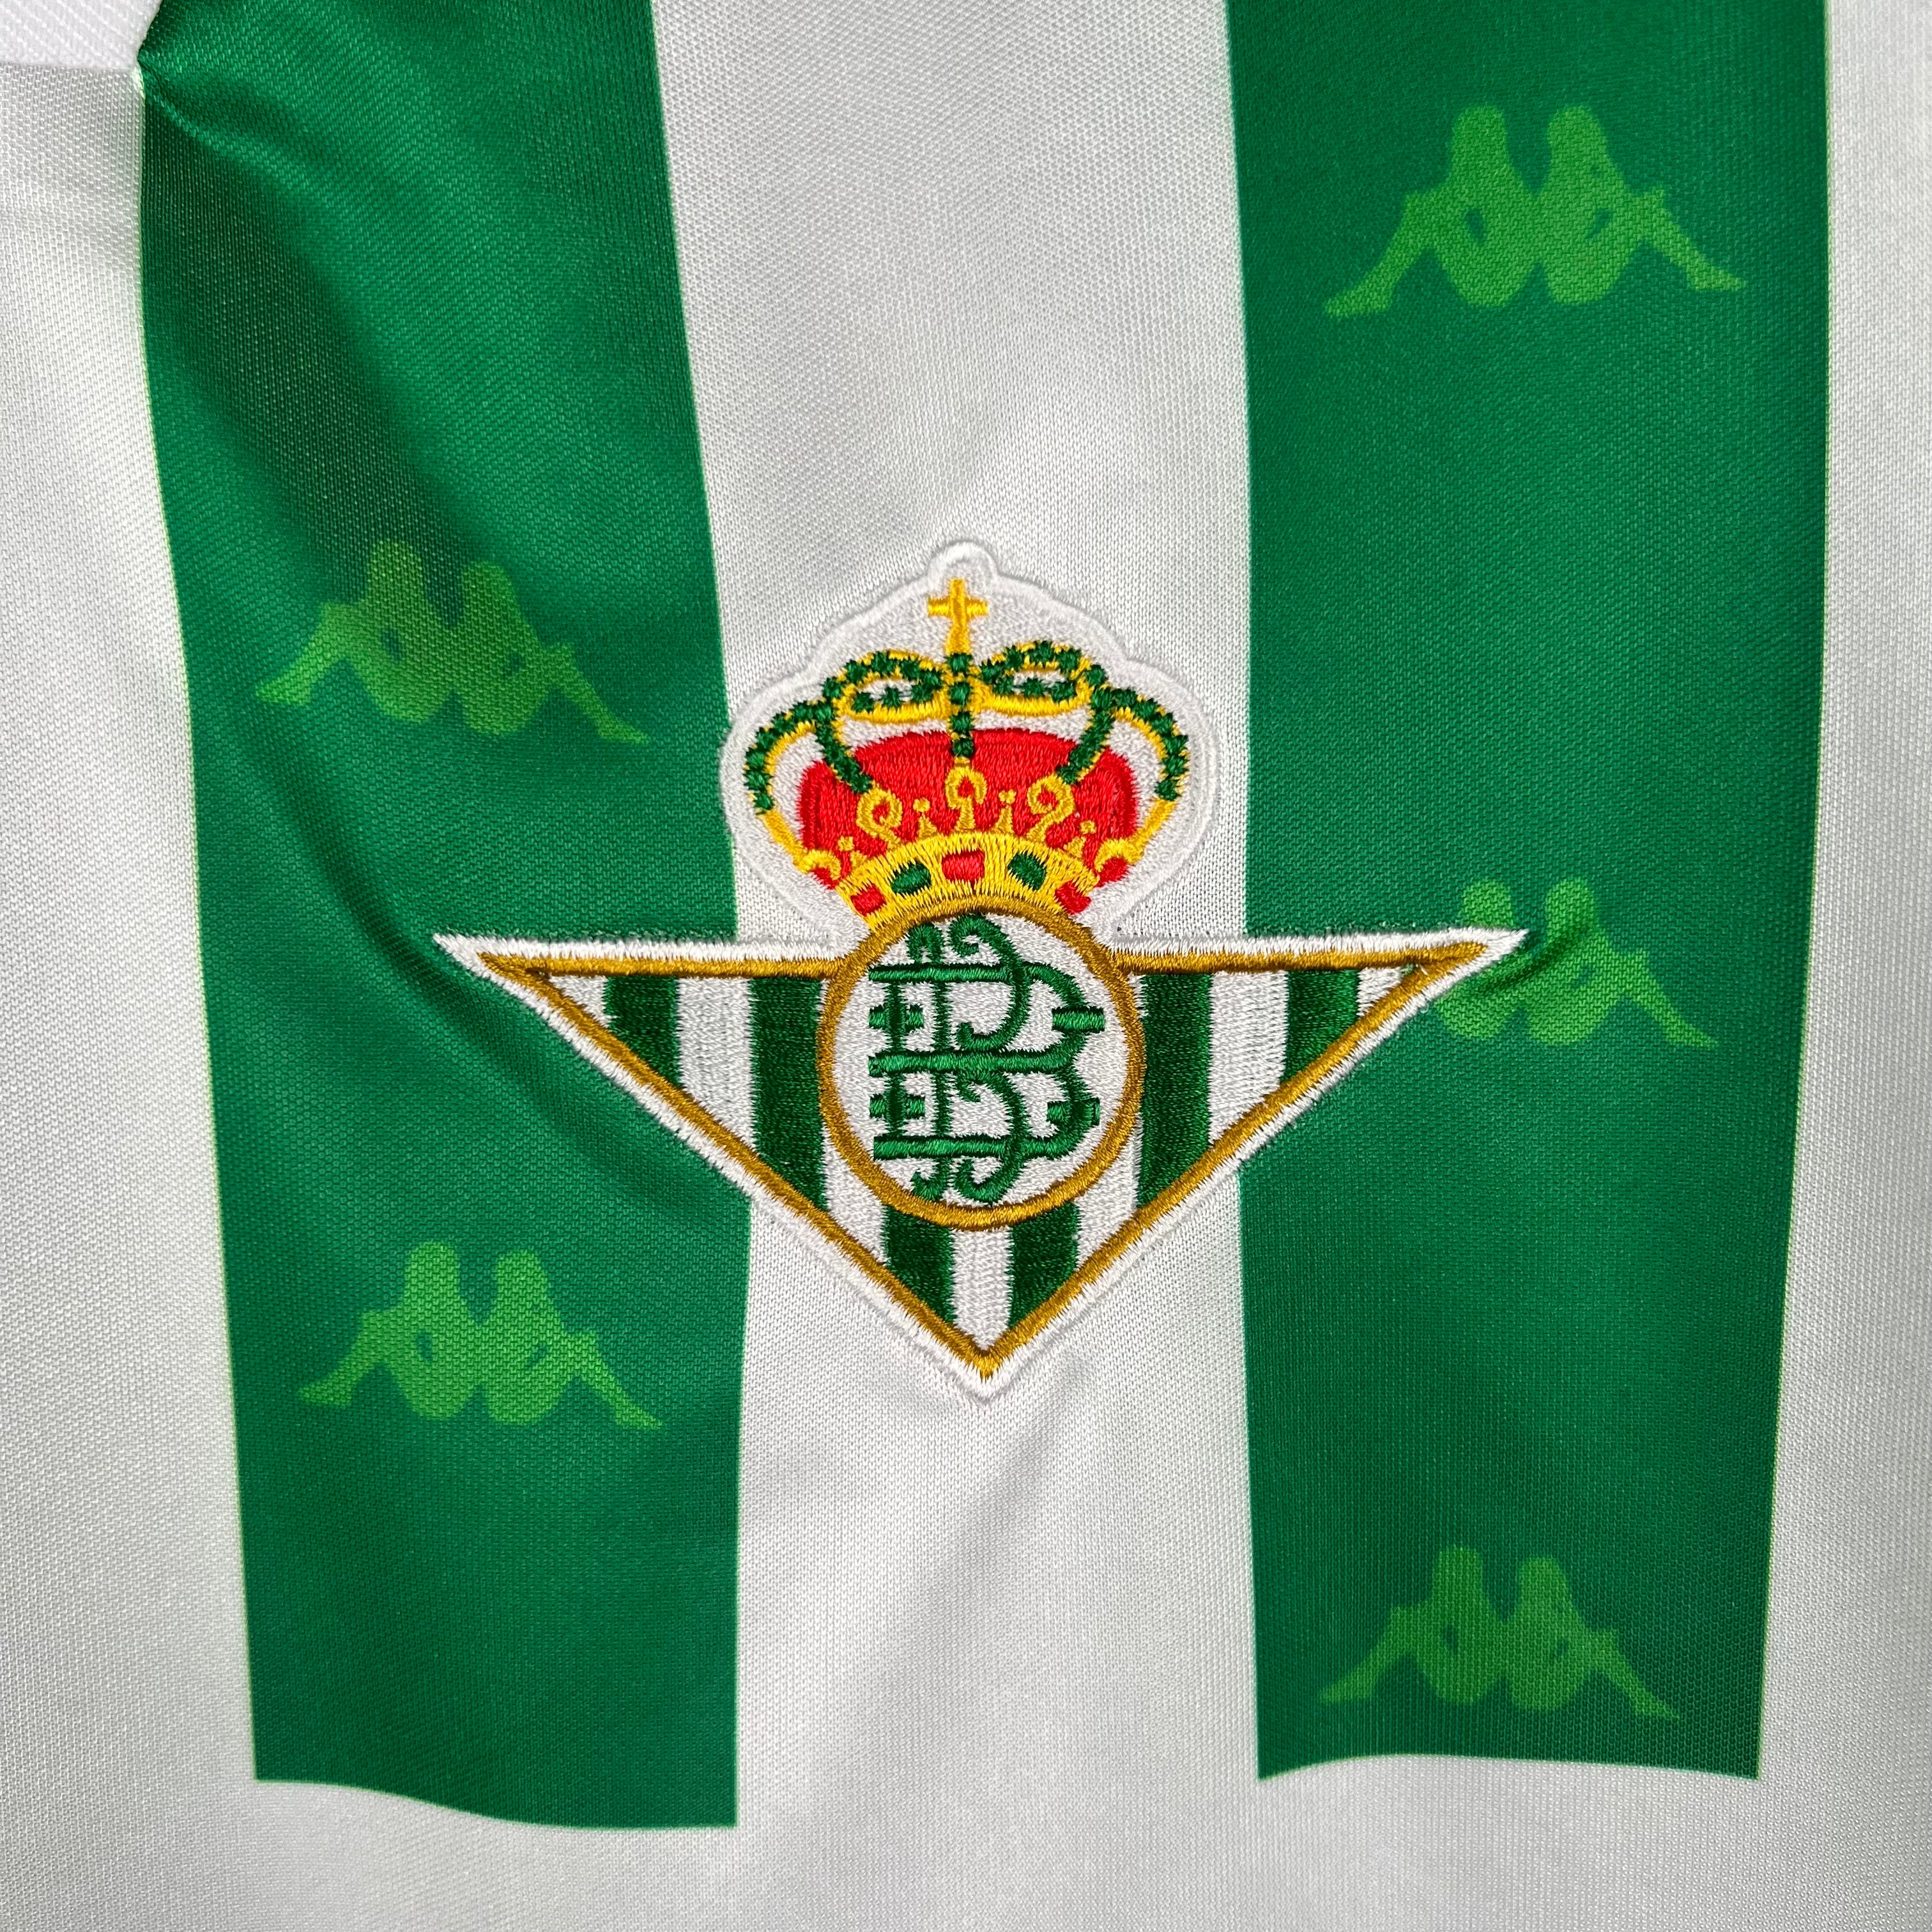 Real Betis - 95/97 Vintage